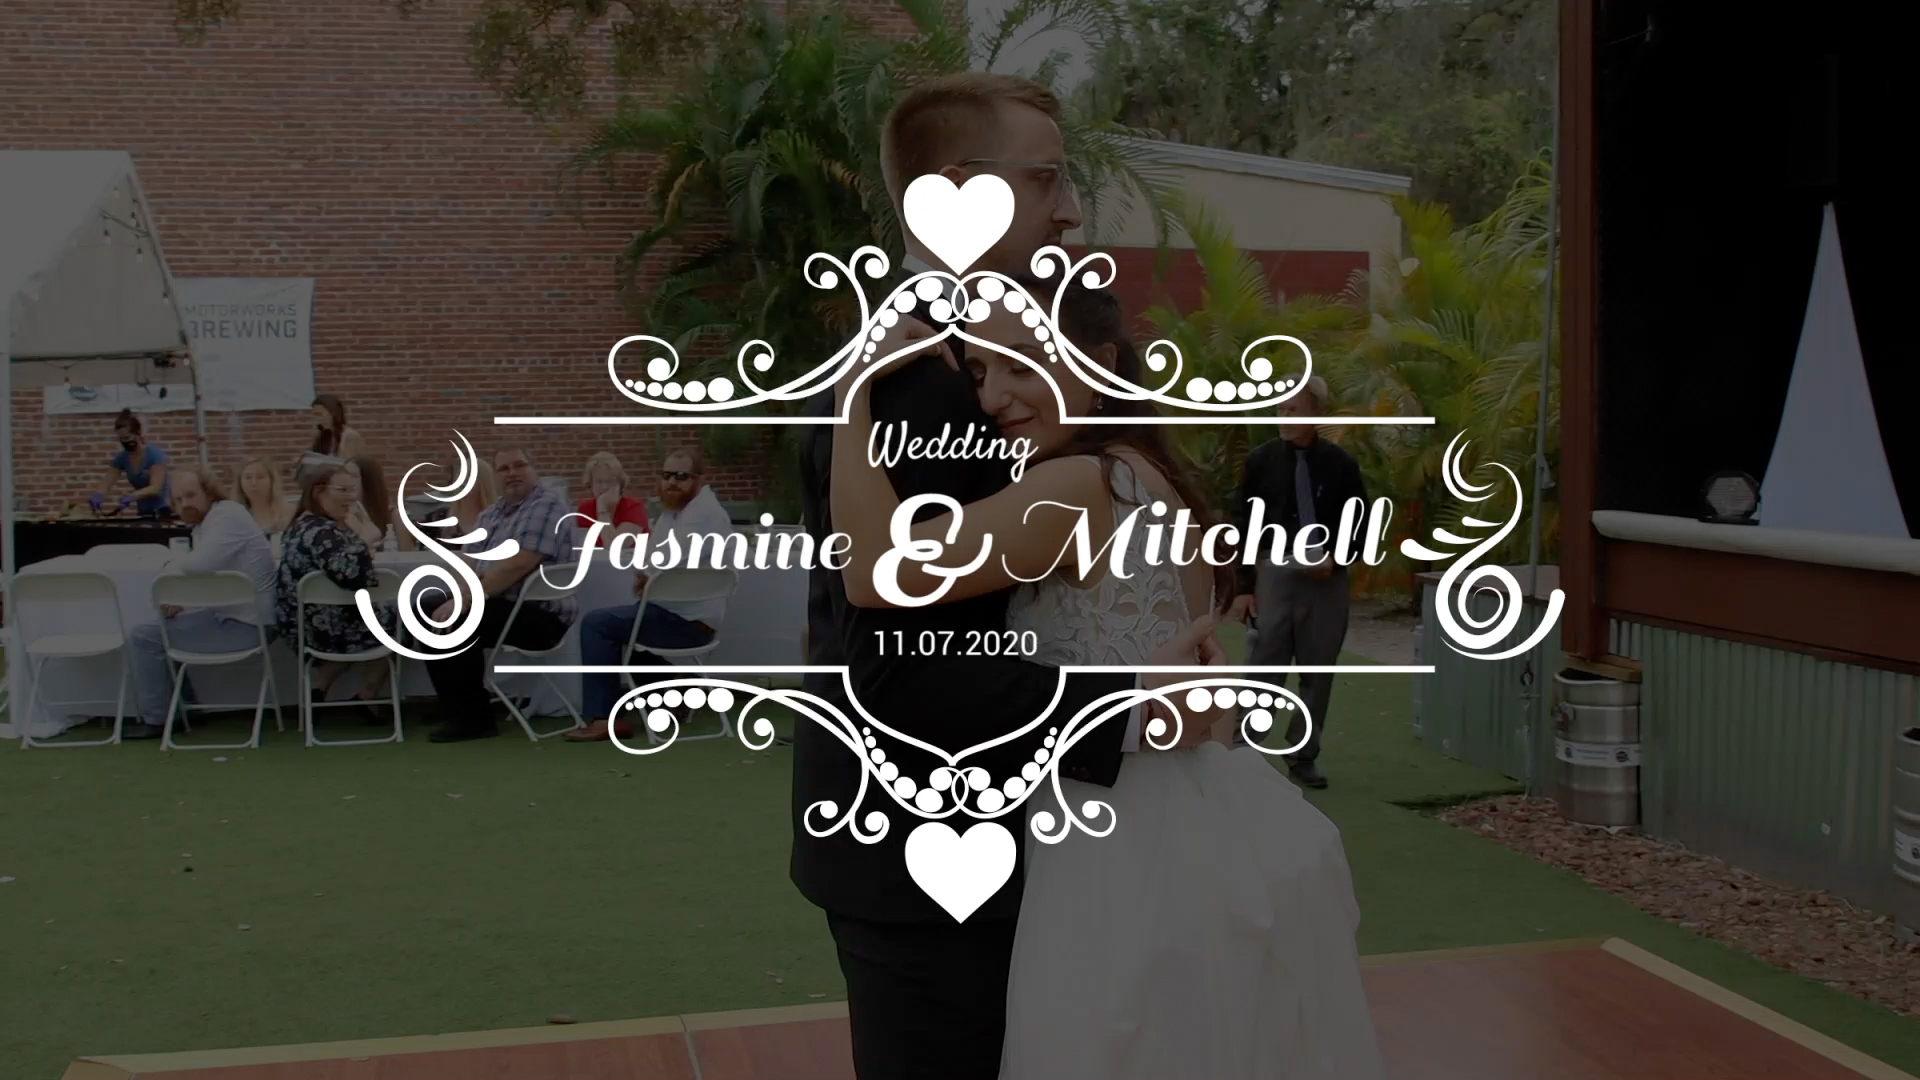 Jasmine & Mitchell Wedding – trailer